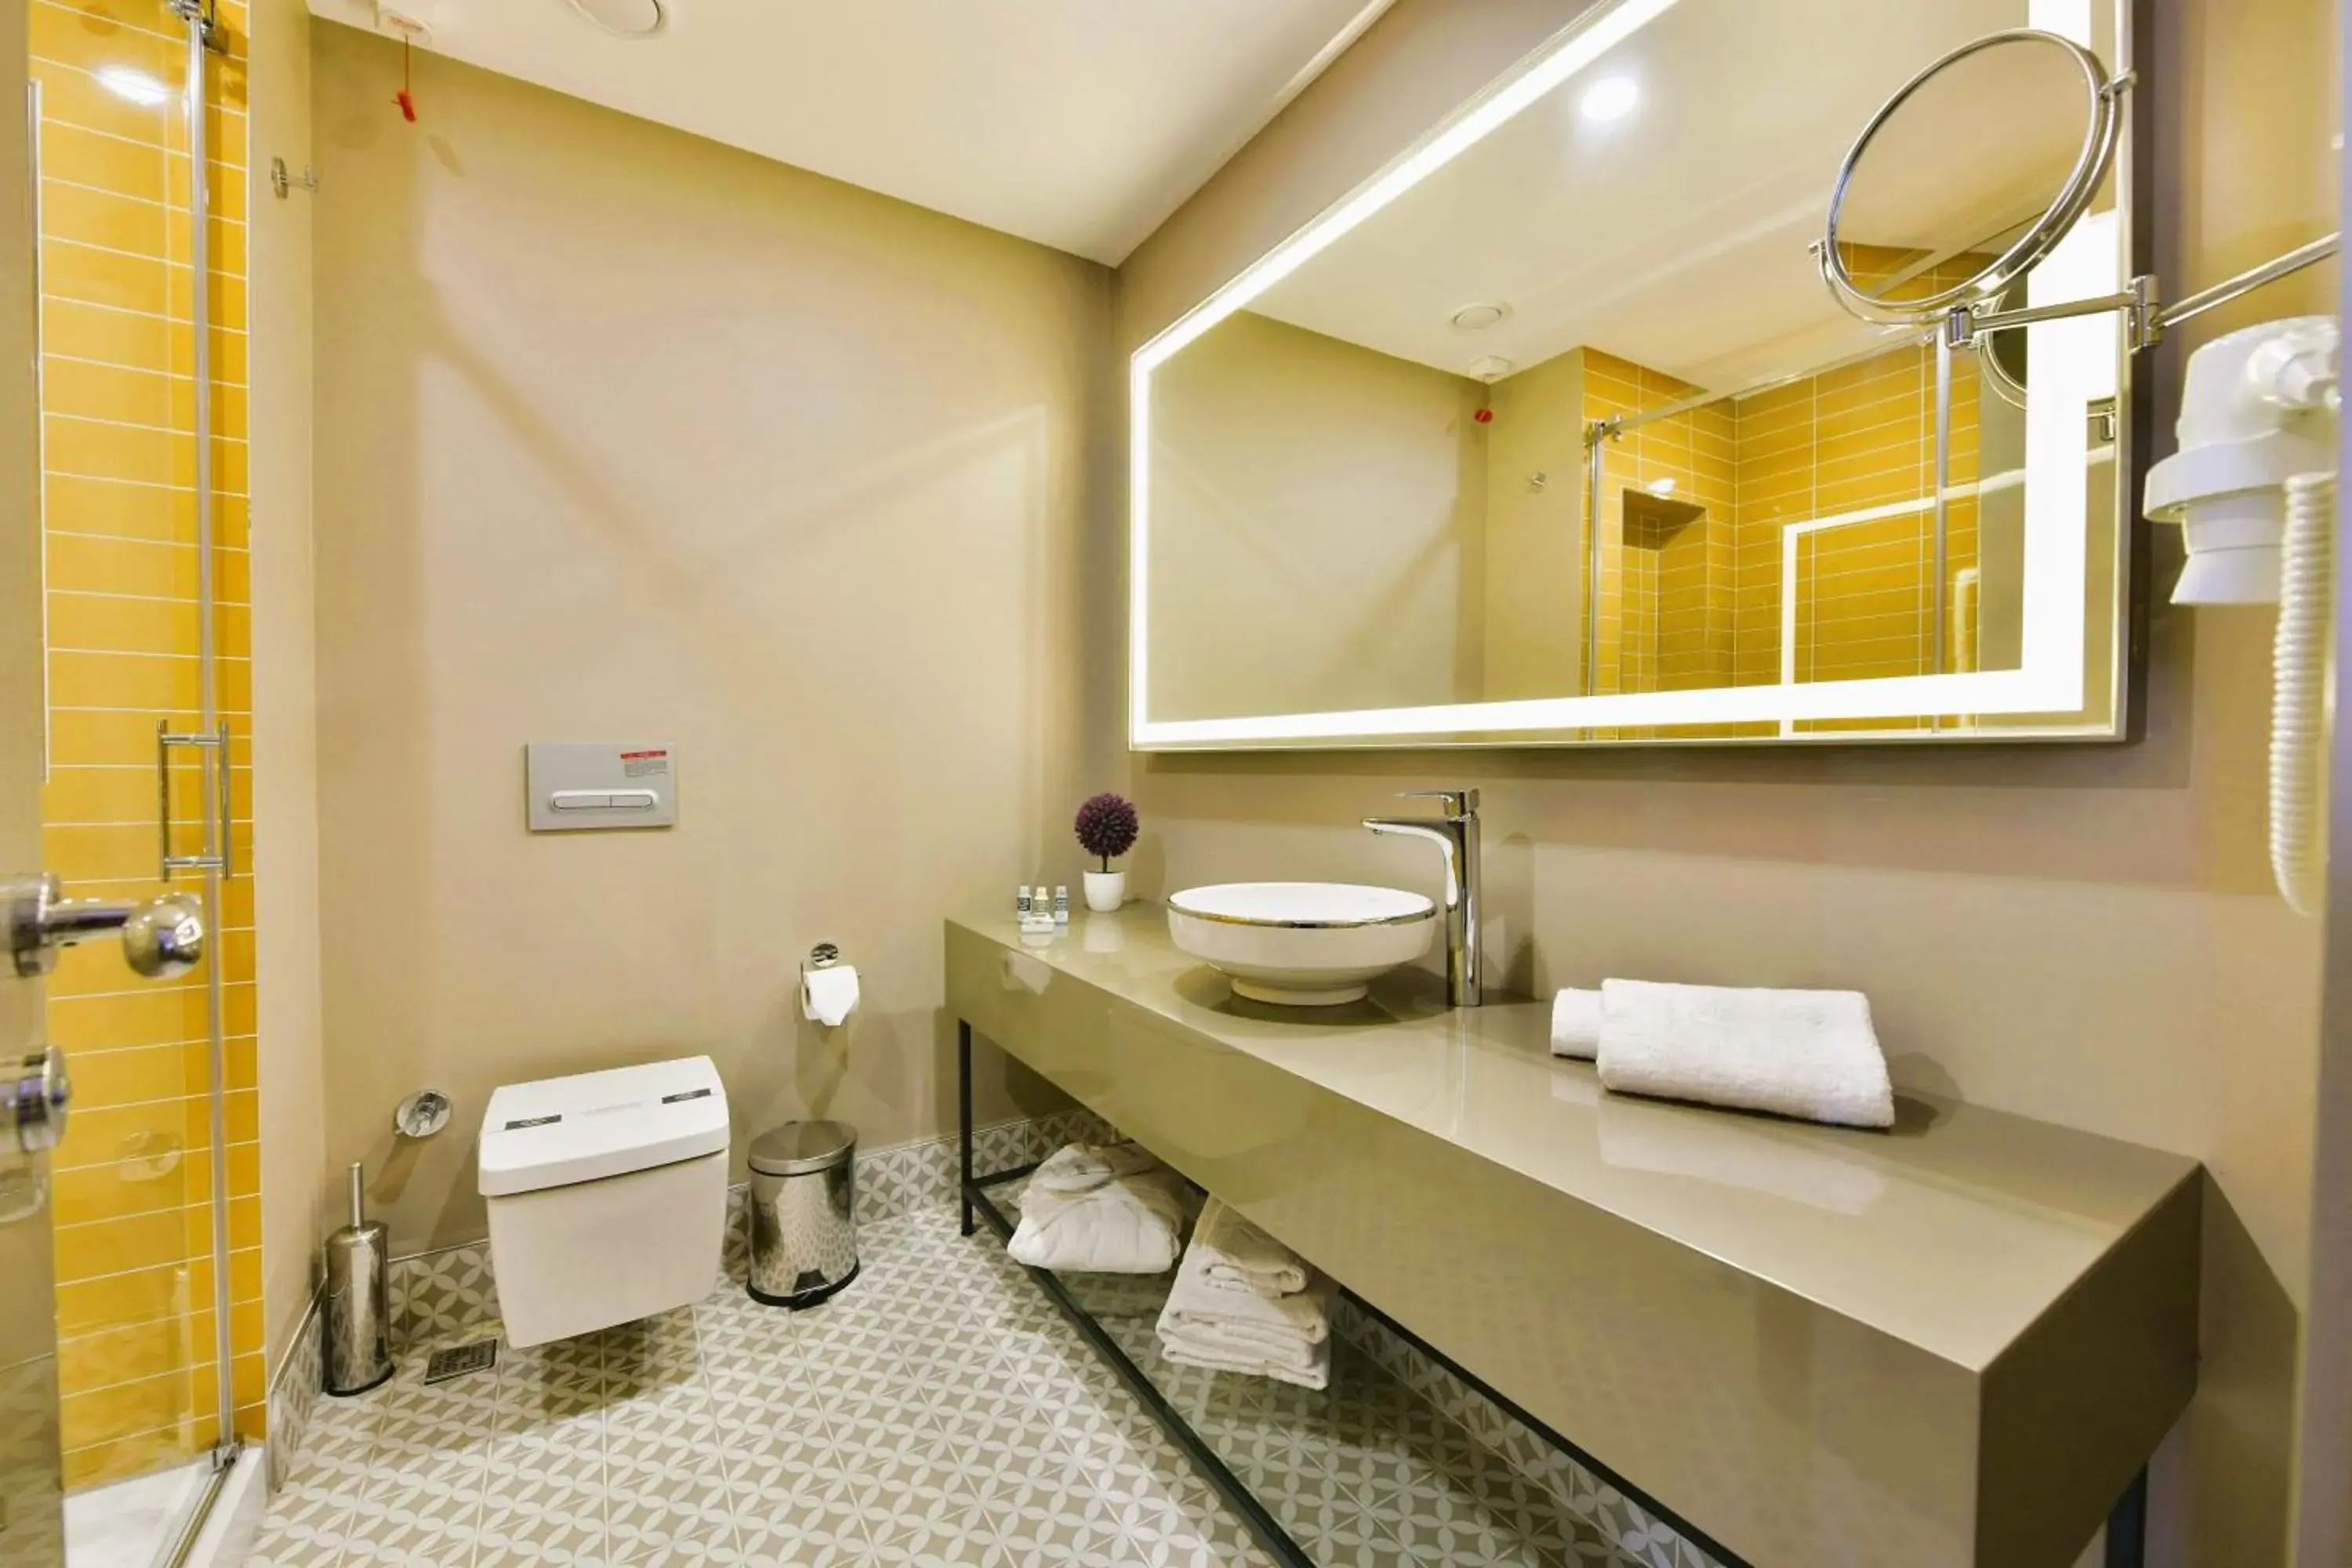 Shower, Bathroom in Ghan Hotel